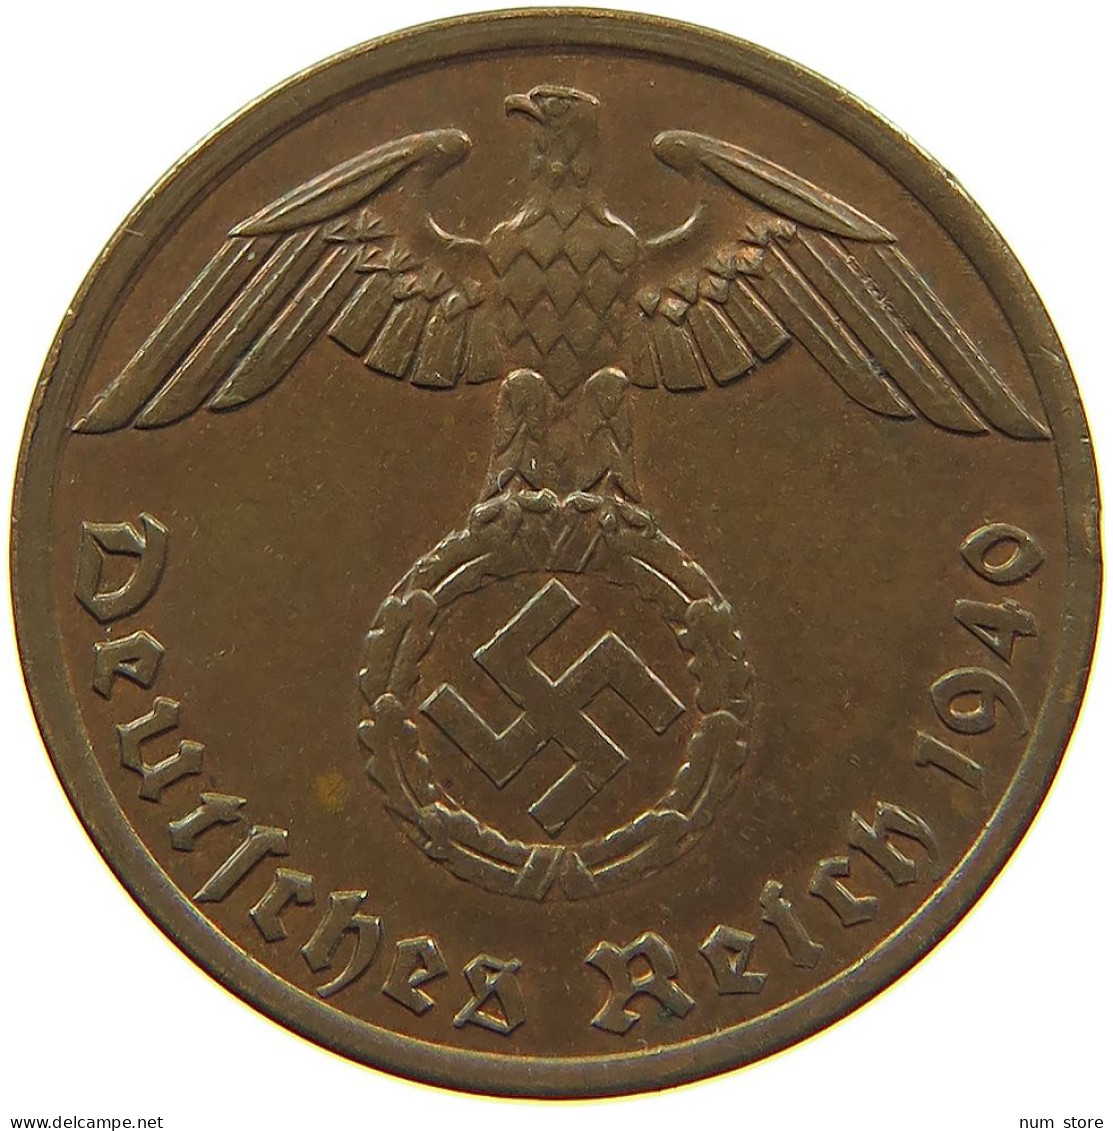 GERMANY 1 REICHSPFENNIG 1940 A #s083 0743 - 1 Reichspfennig